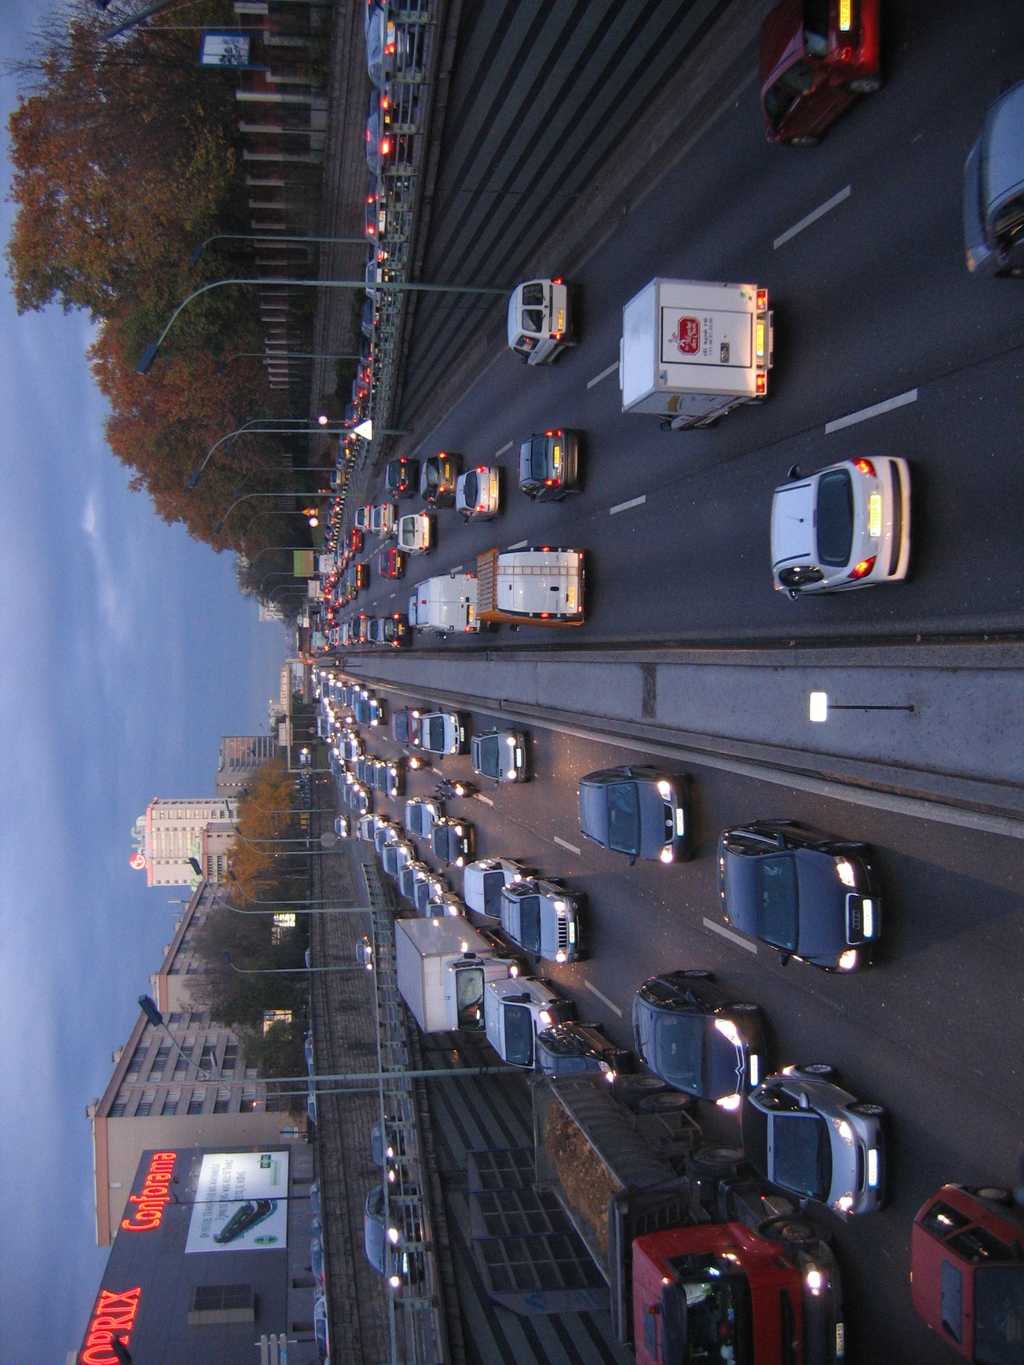 Périphérique parisien surchargé. Il reste encore des efforts à fournir pour améliorer le plan de déplacement urbain de la capitale. © Julien, Wikimedia Commons, cc by nc nd 2.0